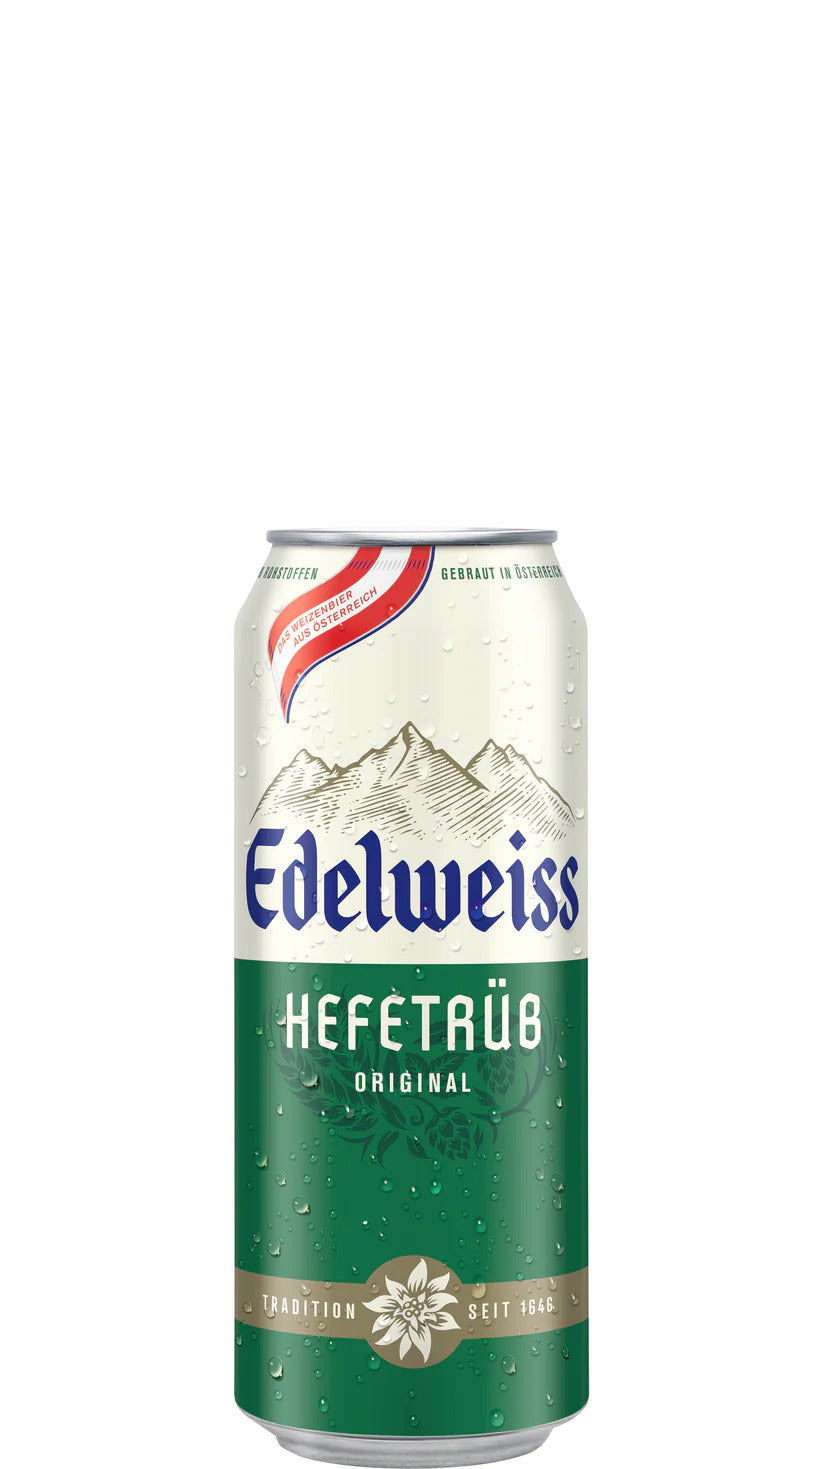 Edelweiss Wheat Bier 5.1% 500ml Can